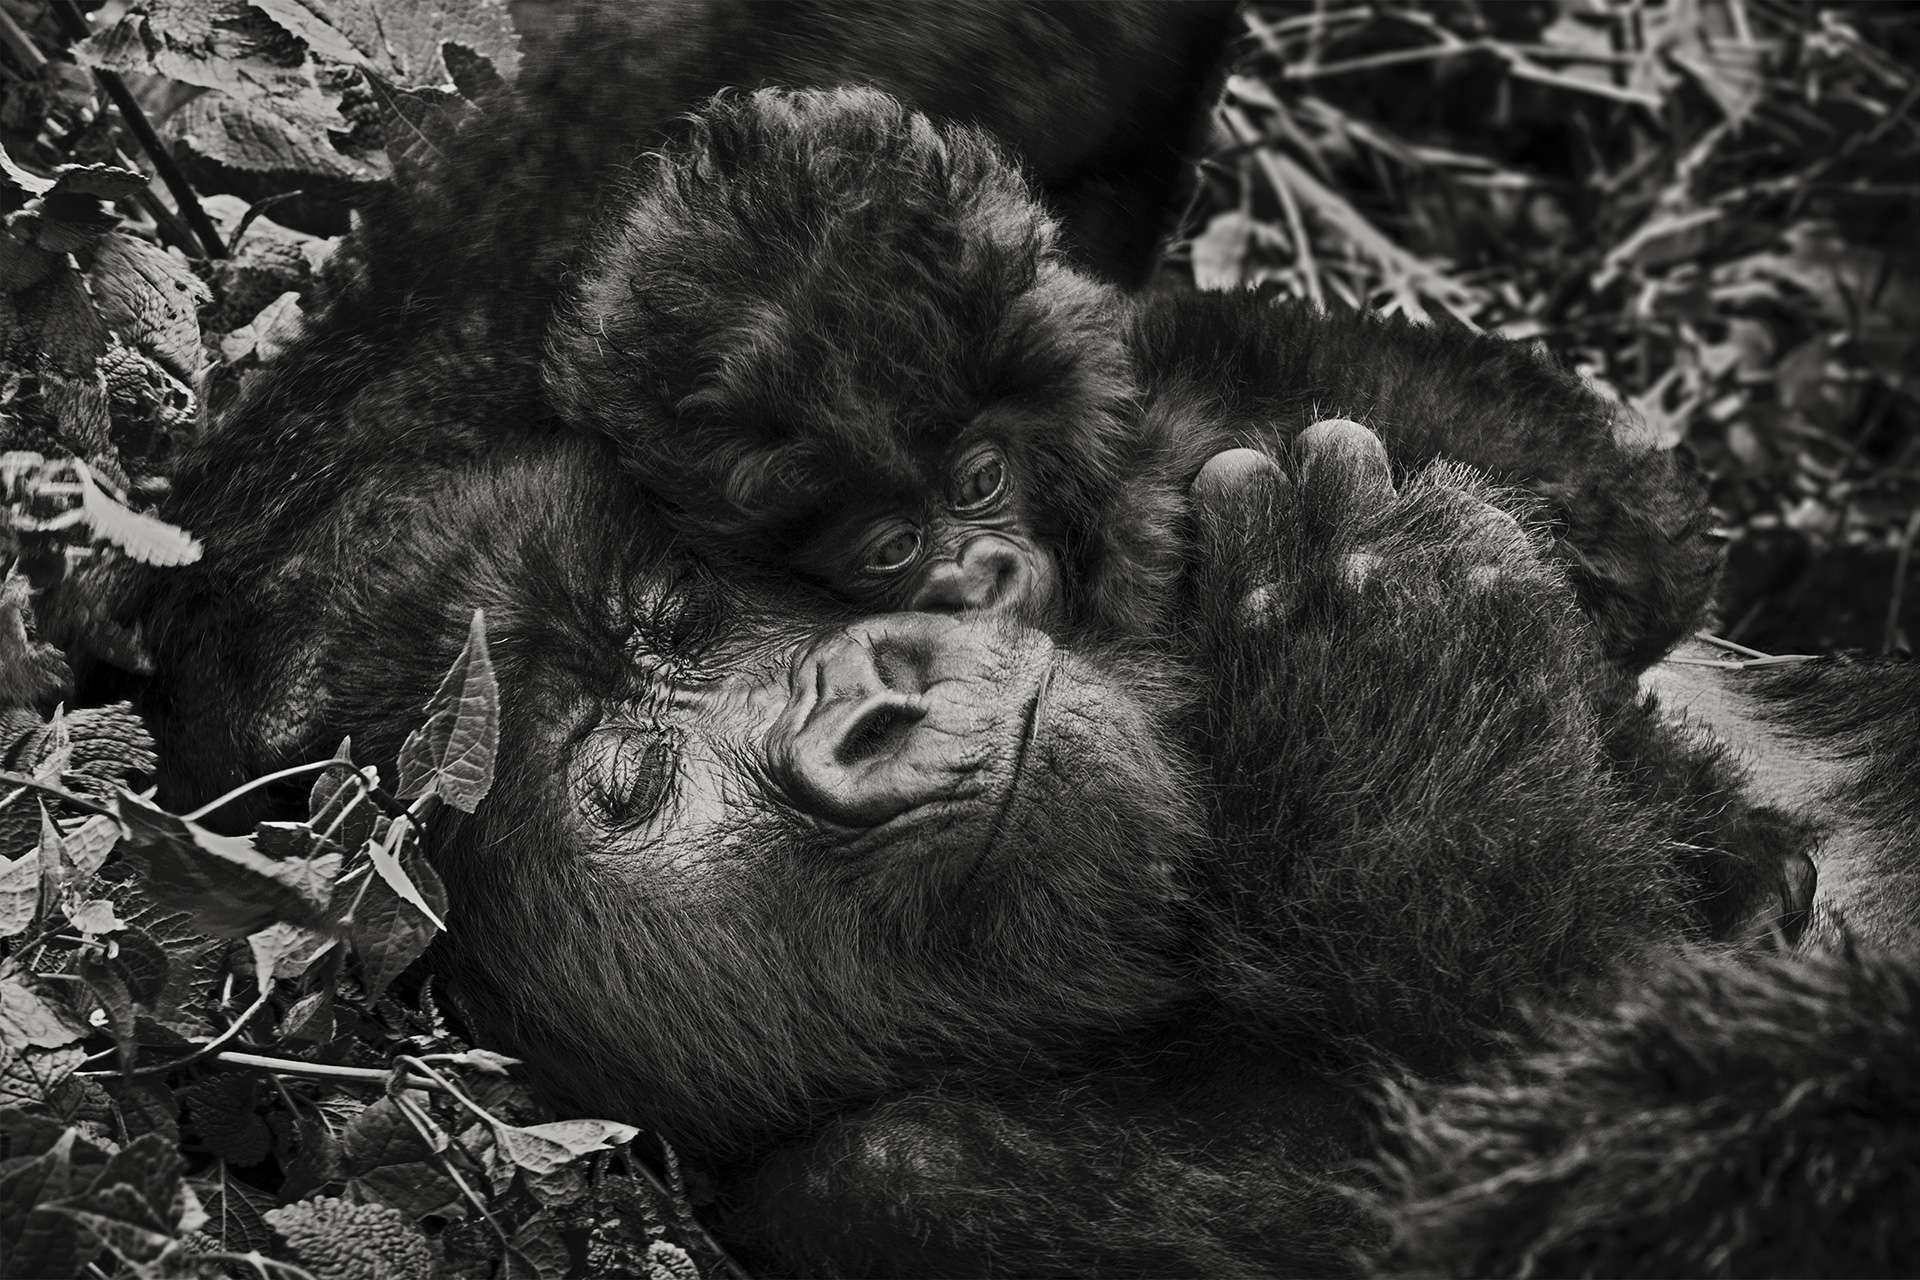 Gilles Martin's photograph of a gorilla from Congo-DRC